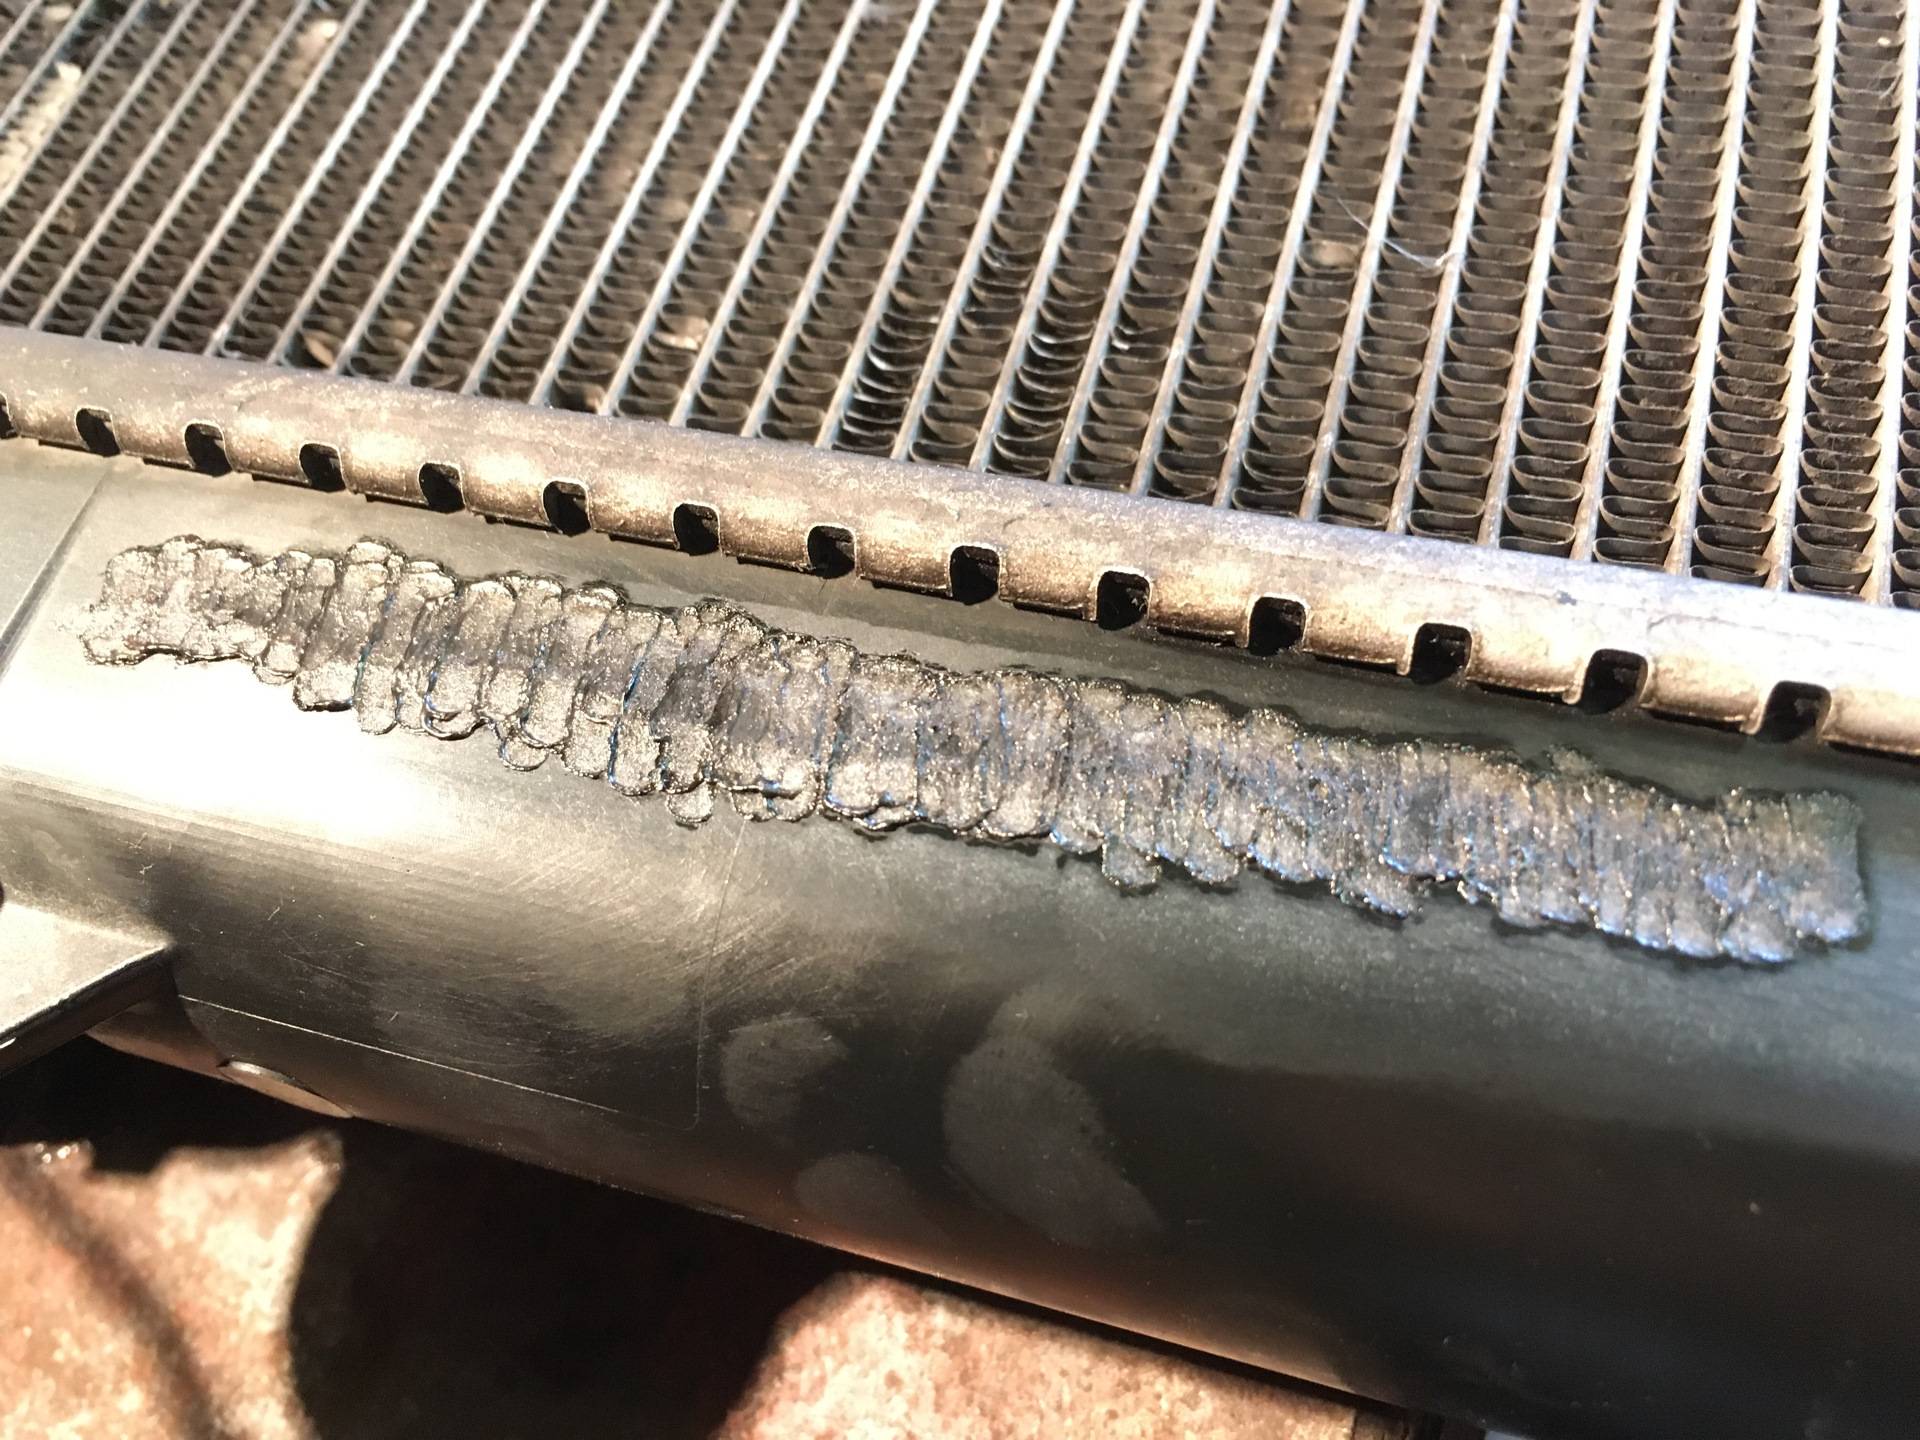 Ремонт алюминиевого радиатора автомобиля своими руками - отопление и водоснабжение - нюансы, которые надо знать